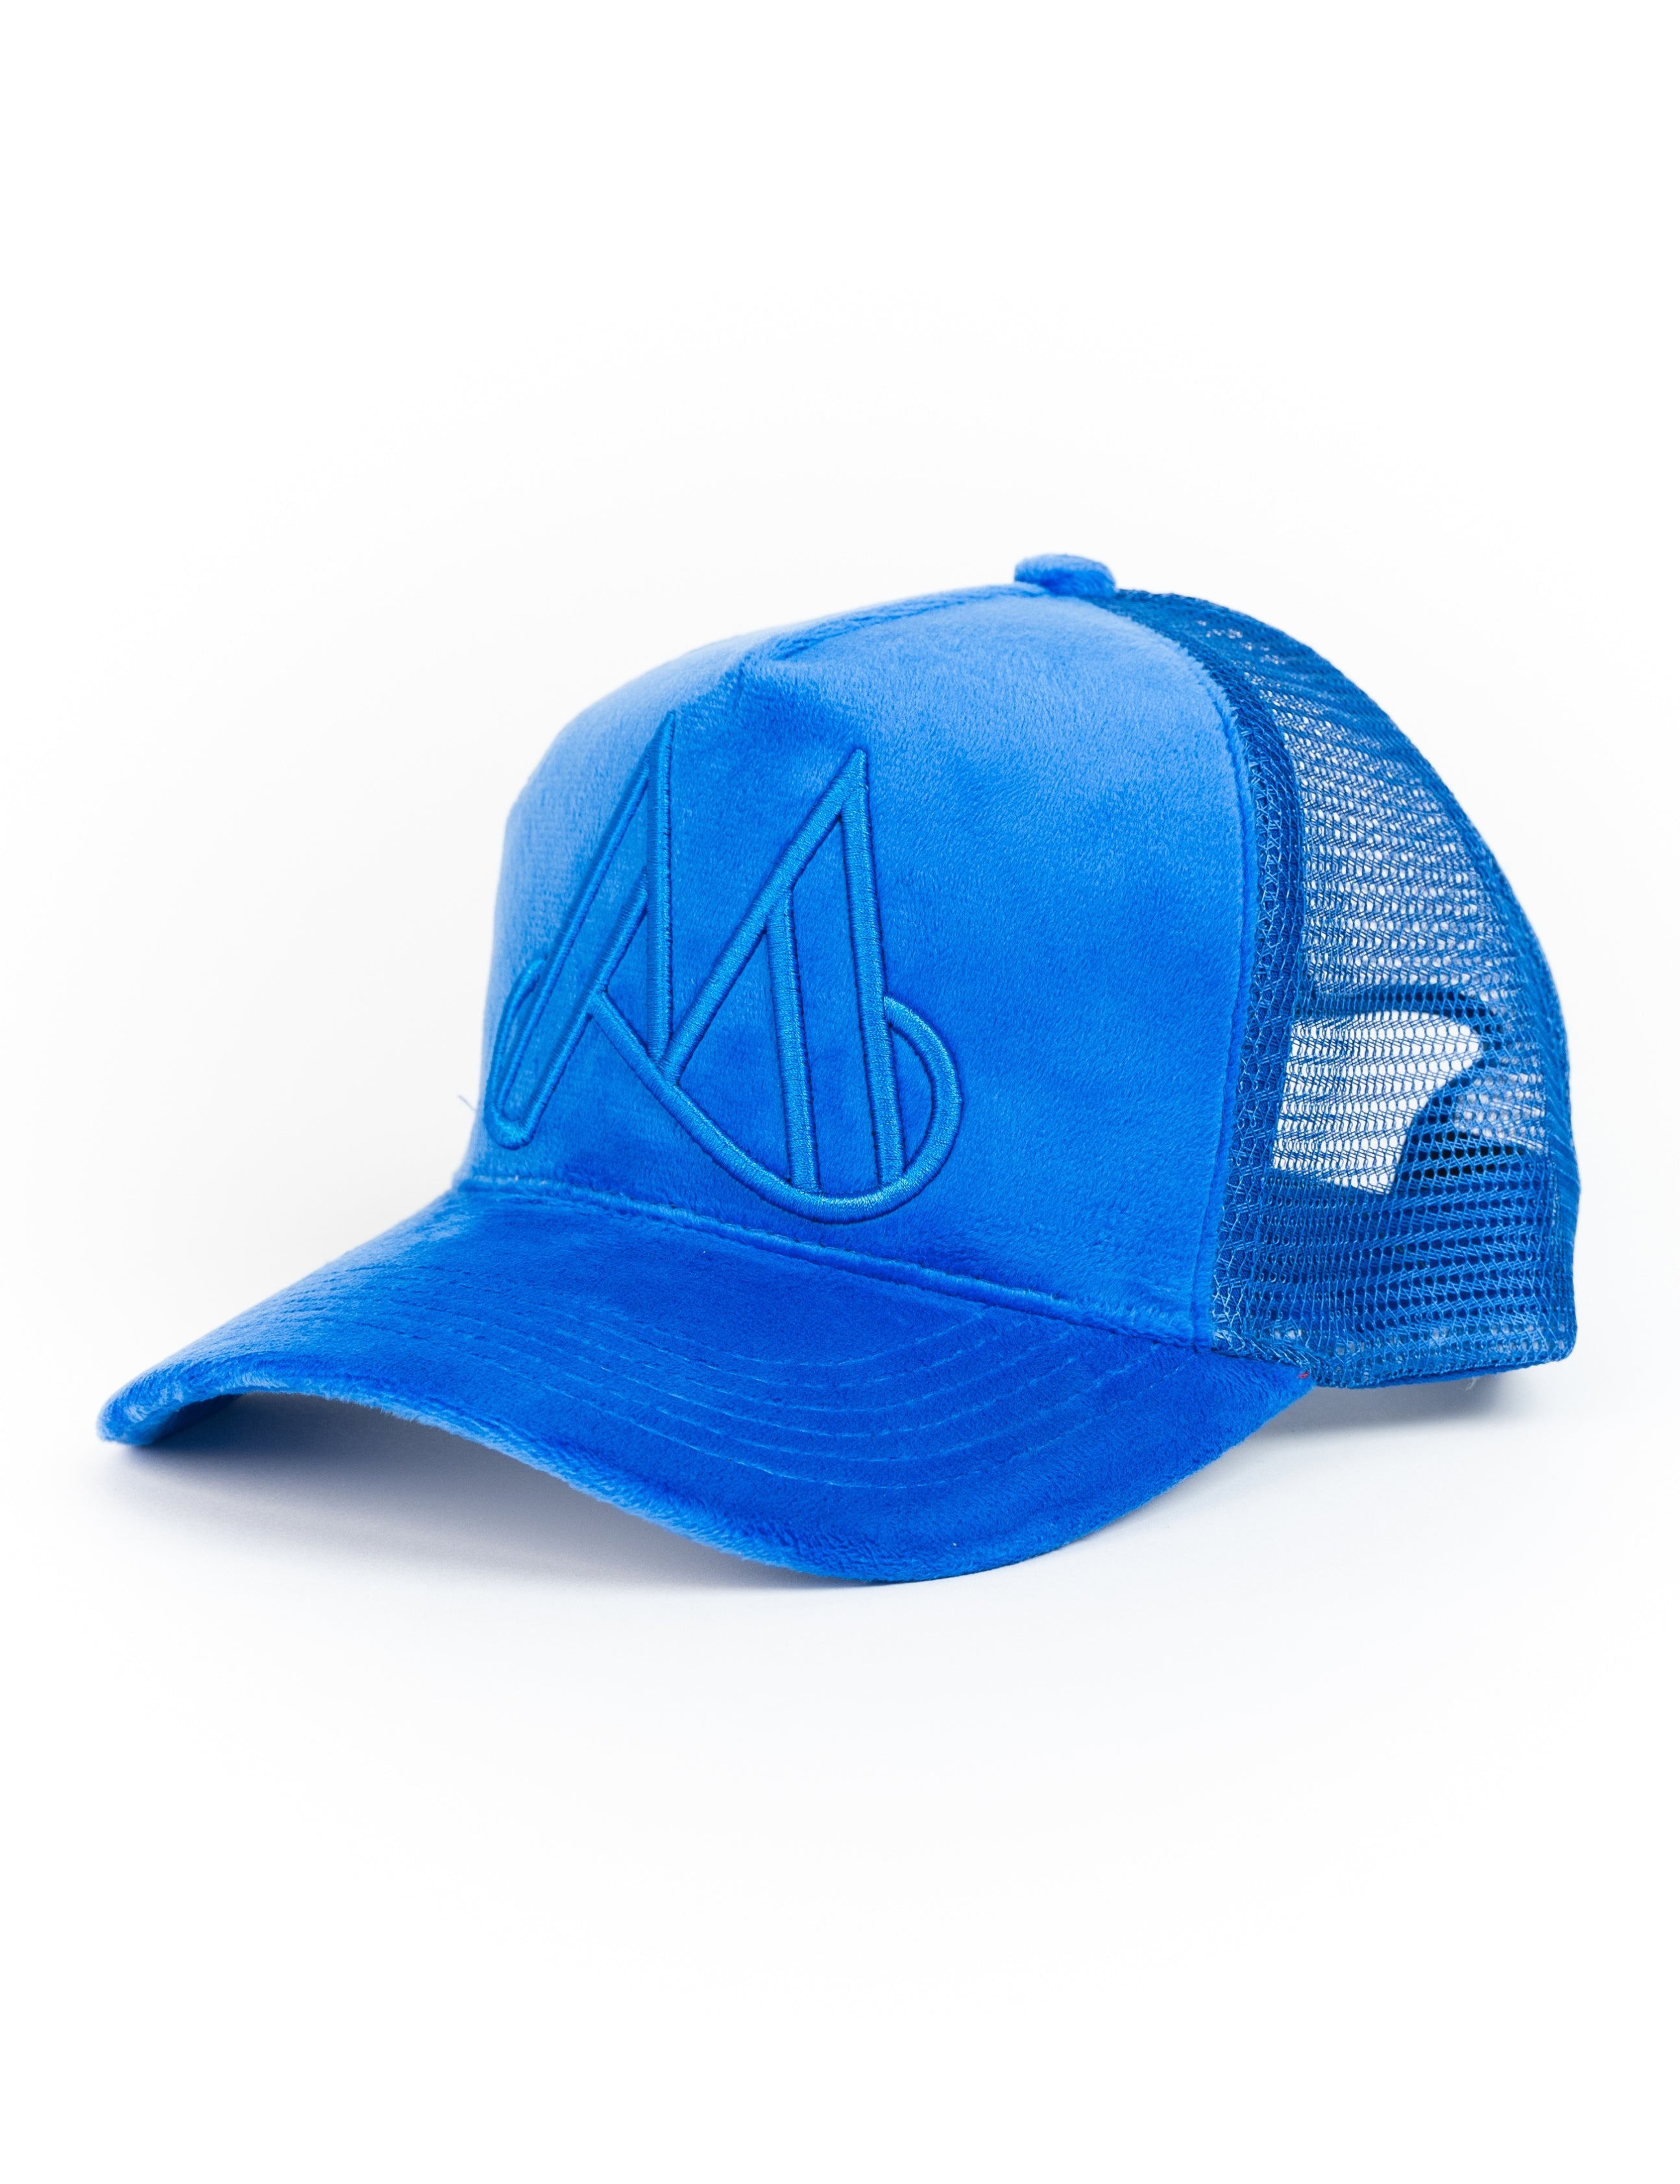 MAGGIORE Unlimited M Logo Blue Cap - MAGGIORE